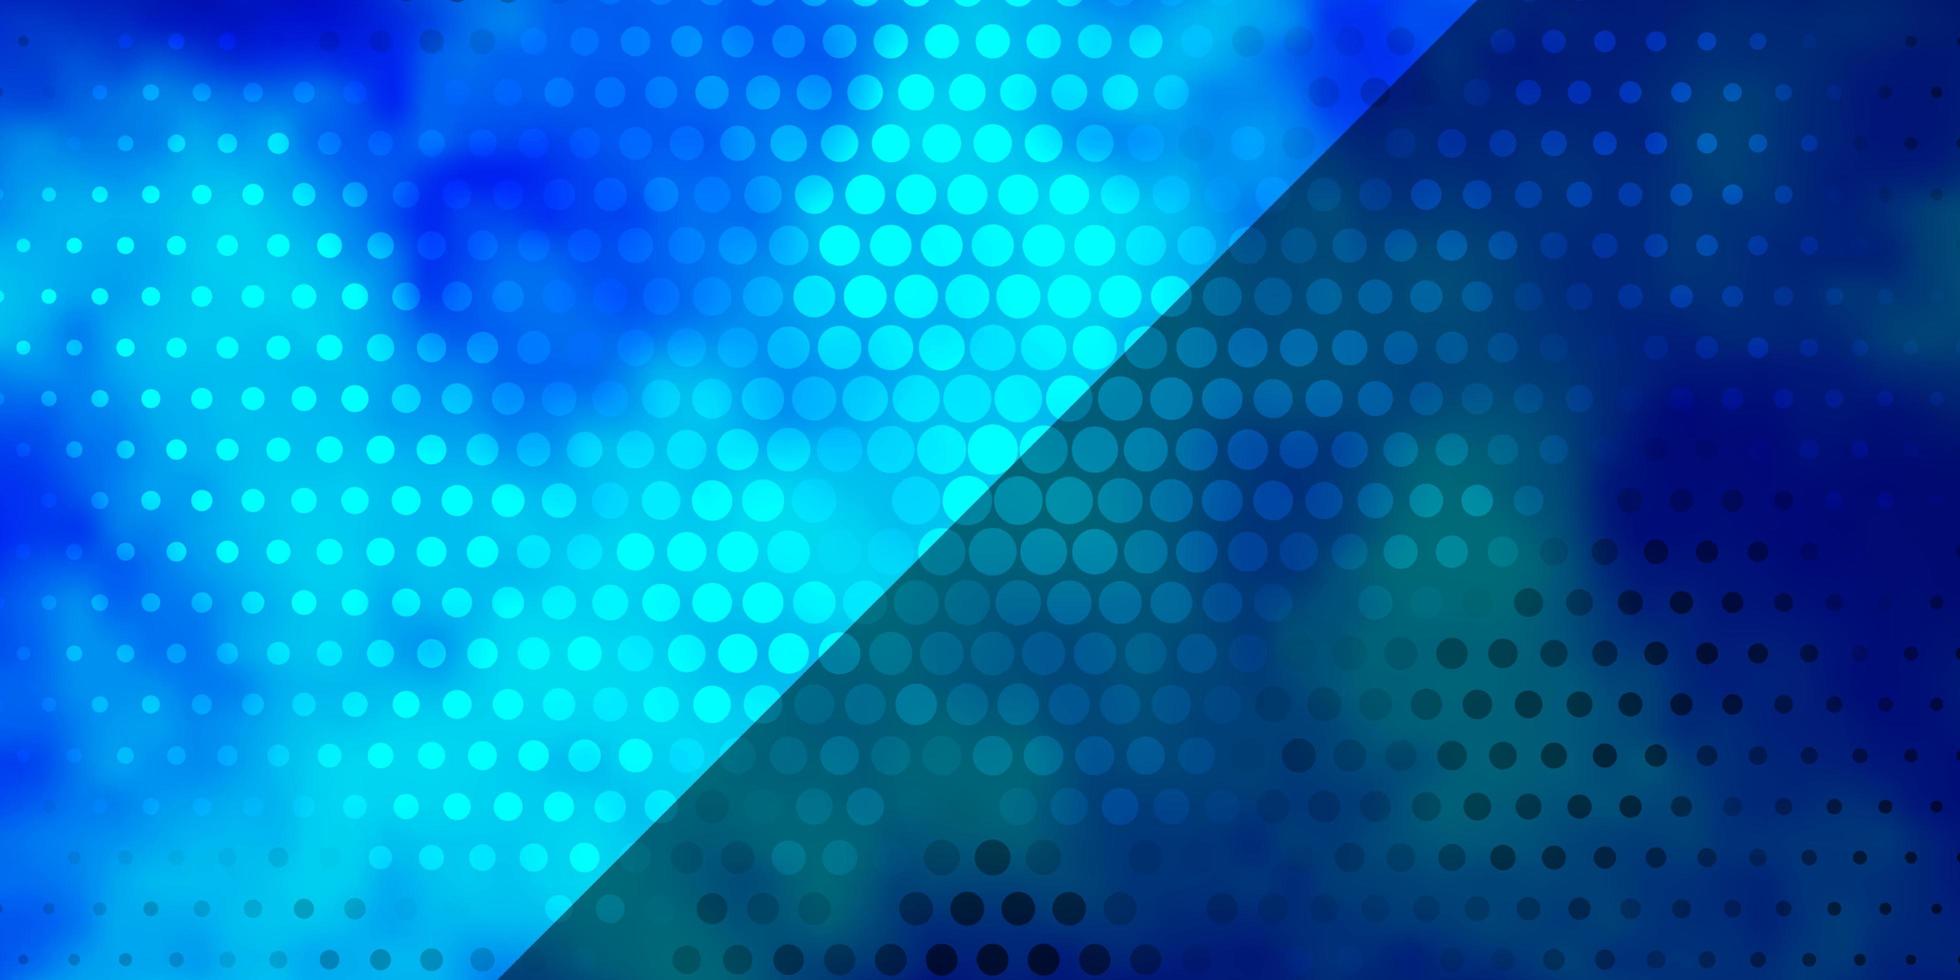 Telón de fondo de vector azul claro con círculos. Ilustración con un conjunto de esferas abstractas de colores brillantes. patrón para anuncios comerciales.